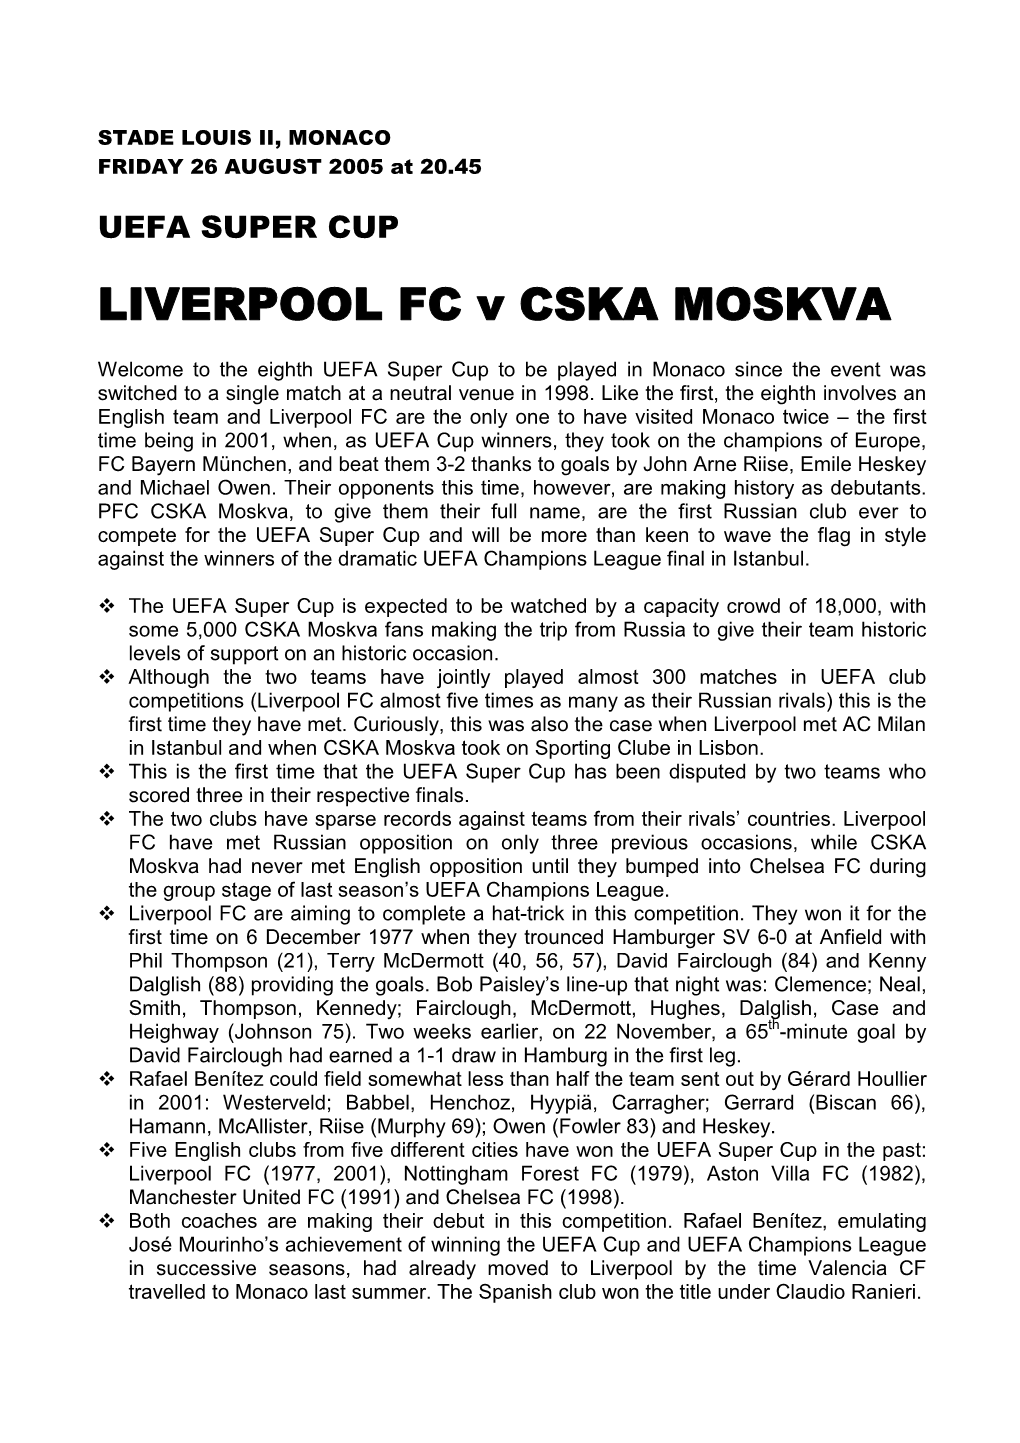 LIVERPOOL FC V CSKA MOSKVA